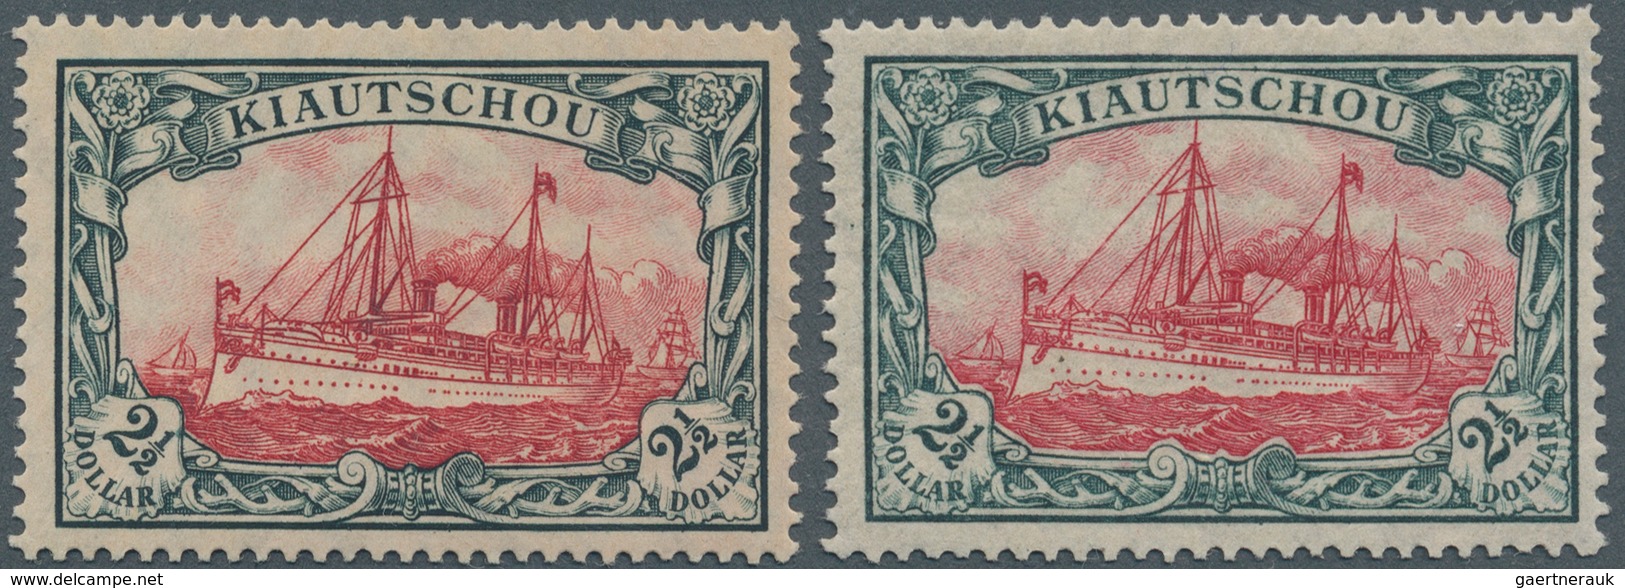 Deutsche Kolonien - Kiautschou: 1919, $ 2 1/2 Kaiseryacht Mit Wasserzeichen, 1x Friedensdruck Mit Zä - Kiautschou